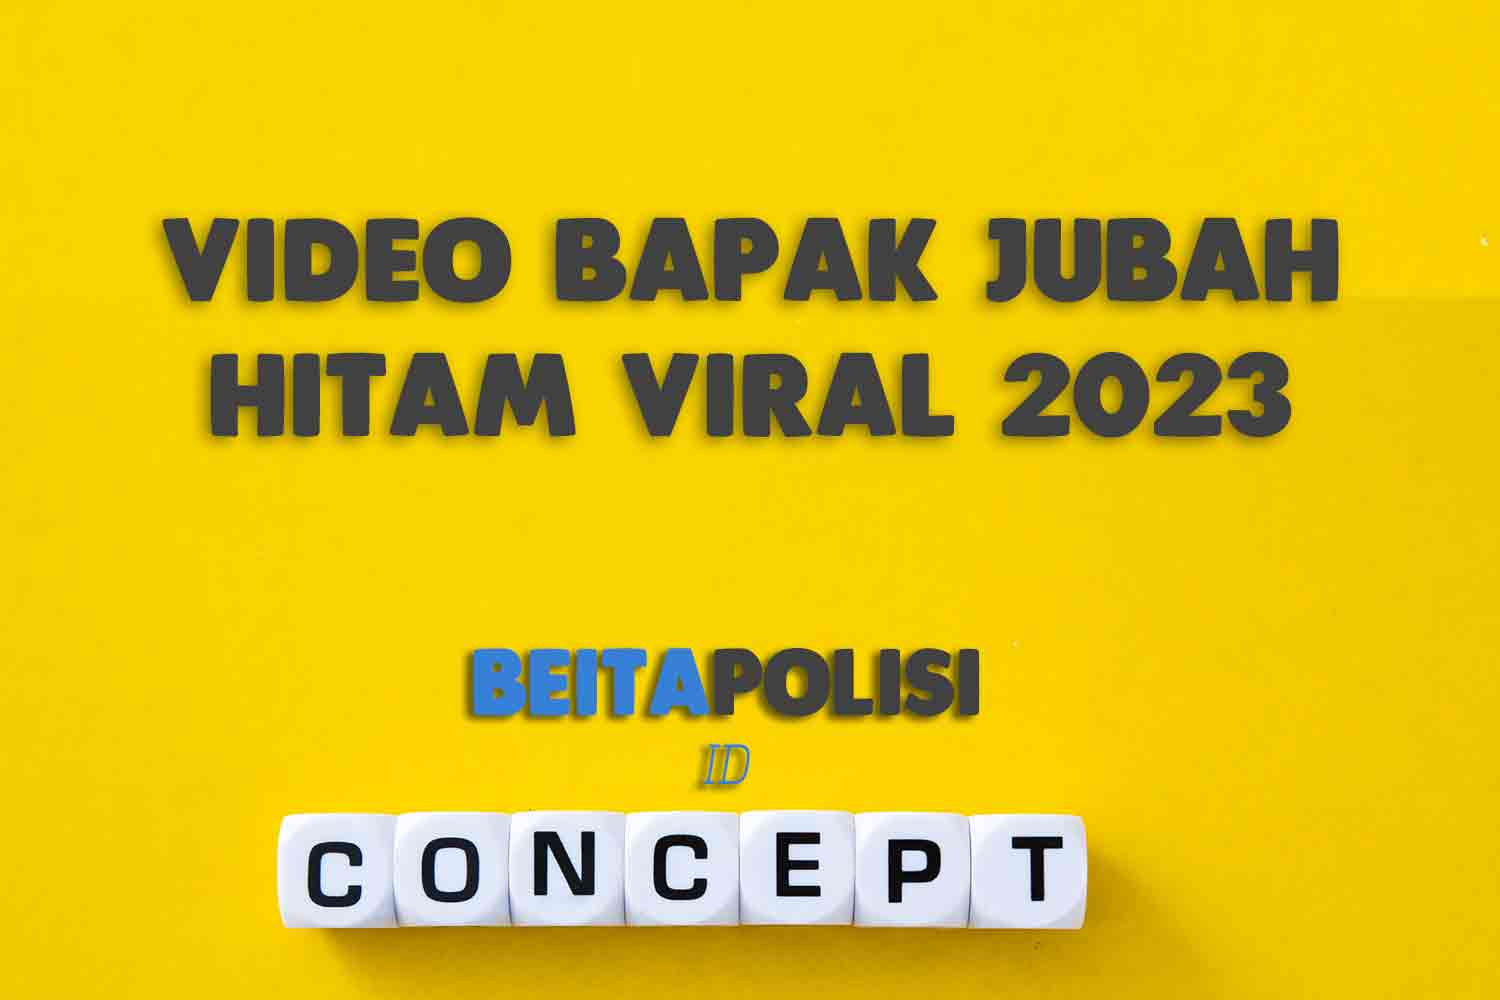 Video Bapak Jubah Hitam Viral 2023